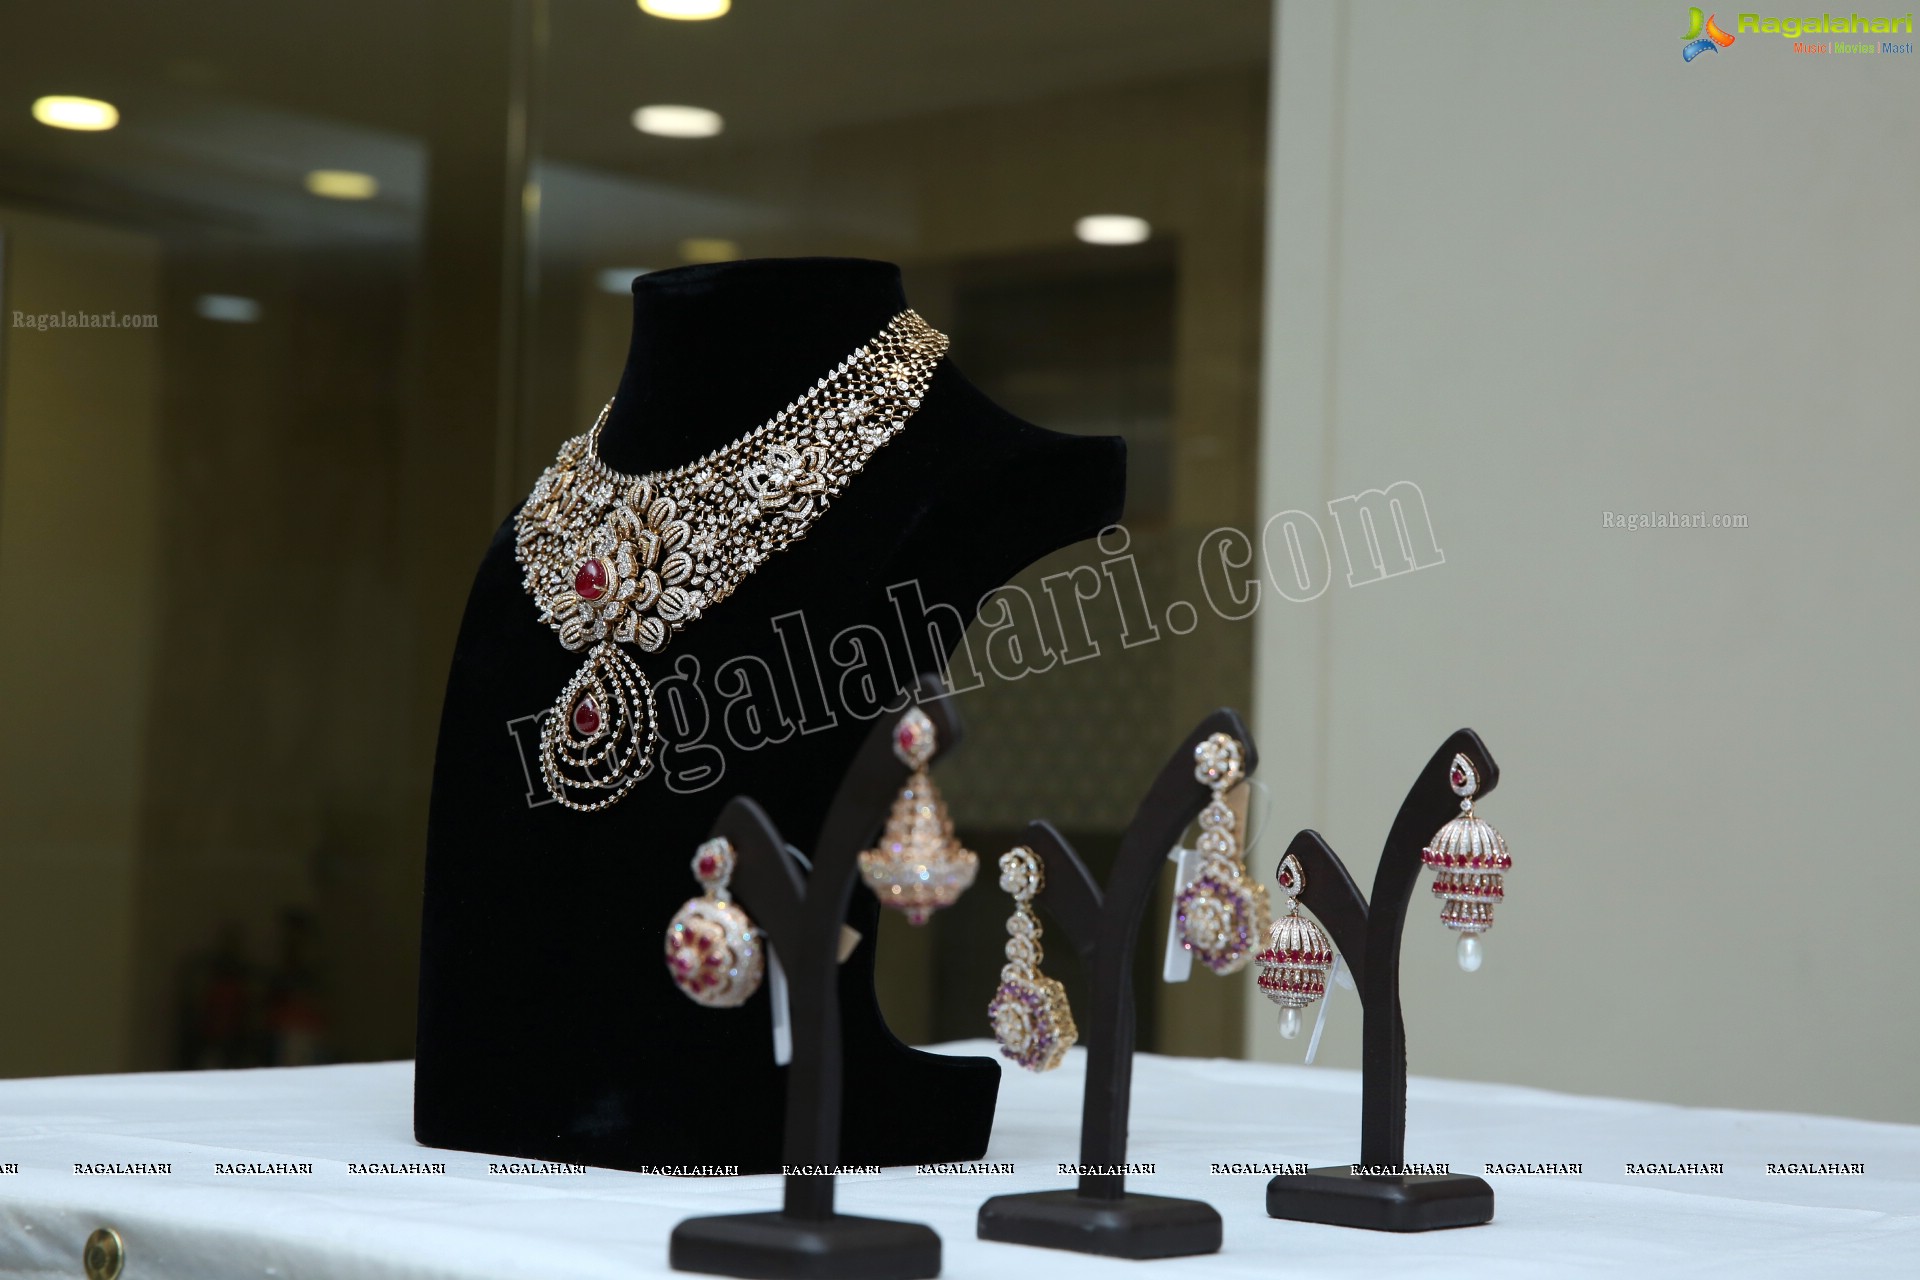 Kirtilals Bridal collection ‘Sindooram’ Display at Somajiguda, Hyderabad